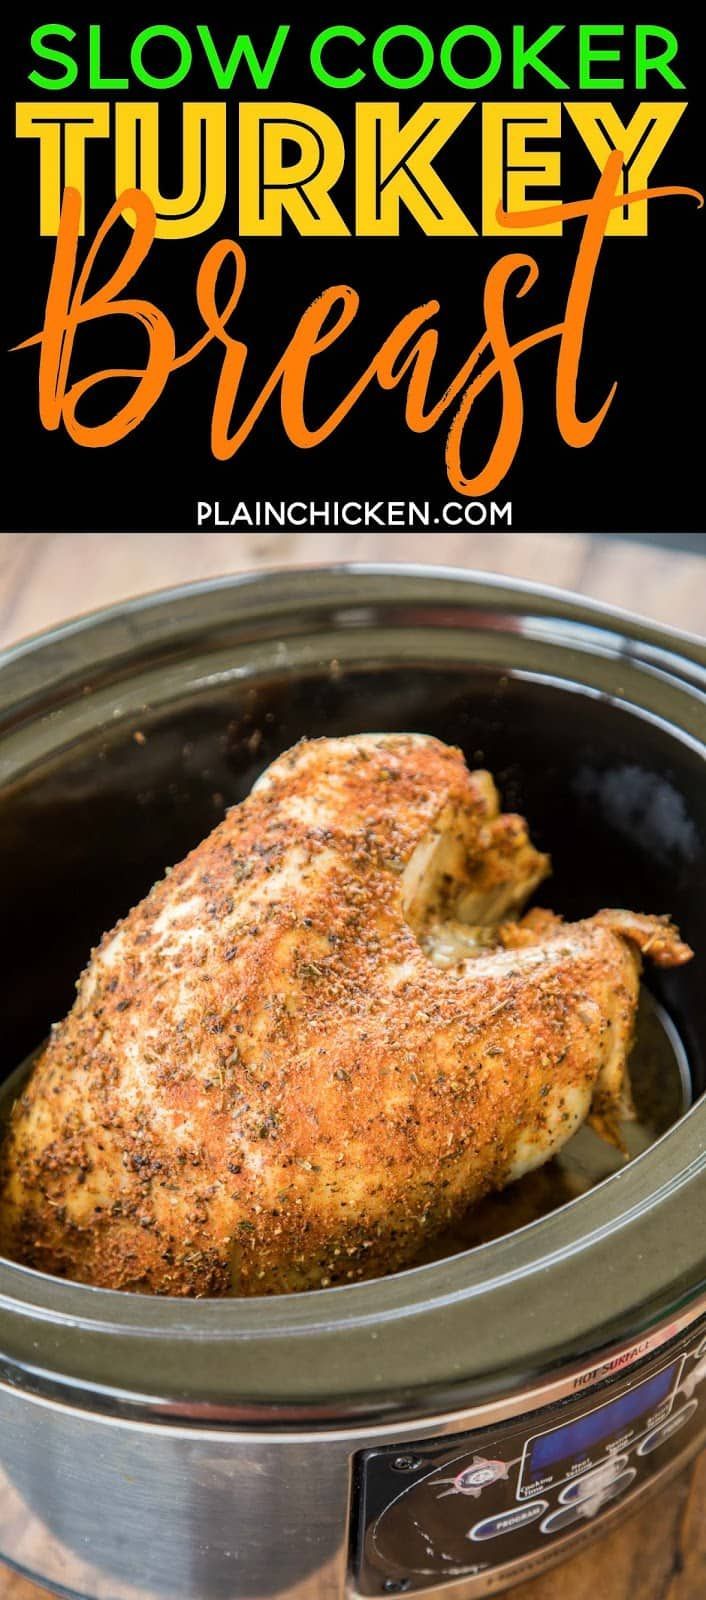 19 turkey breast recipes crock pot ideas